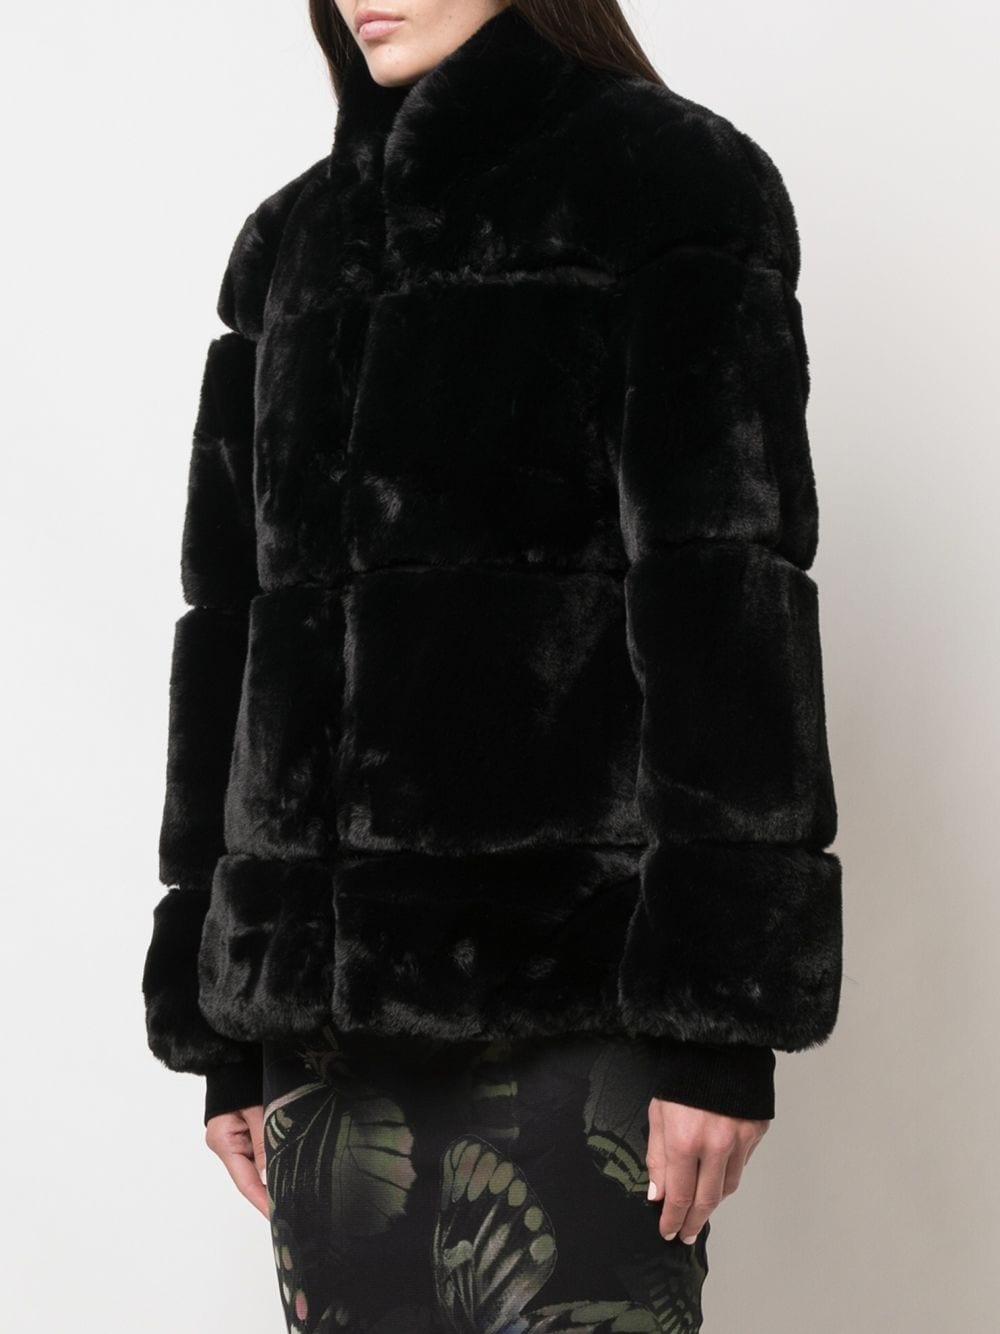 Apparis Sarah Faux Fur Coat in Black - Lyst